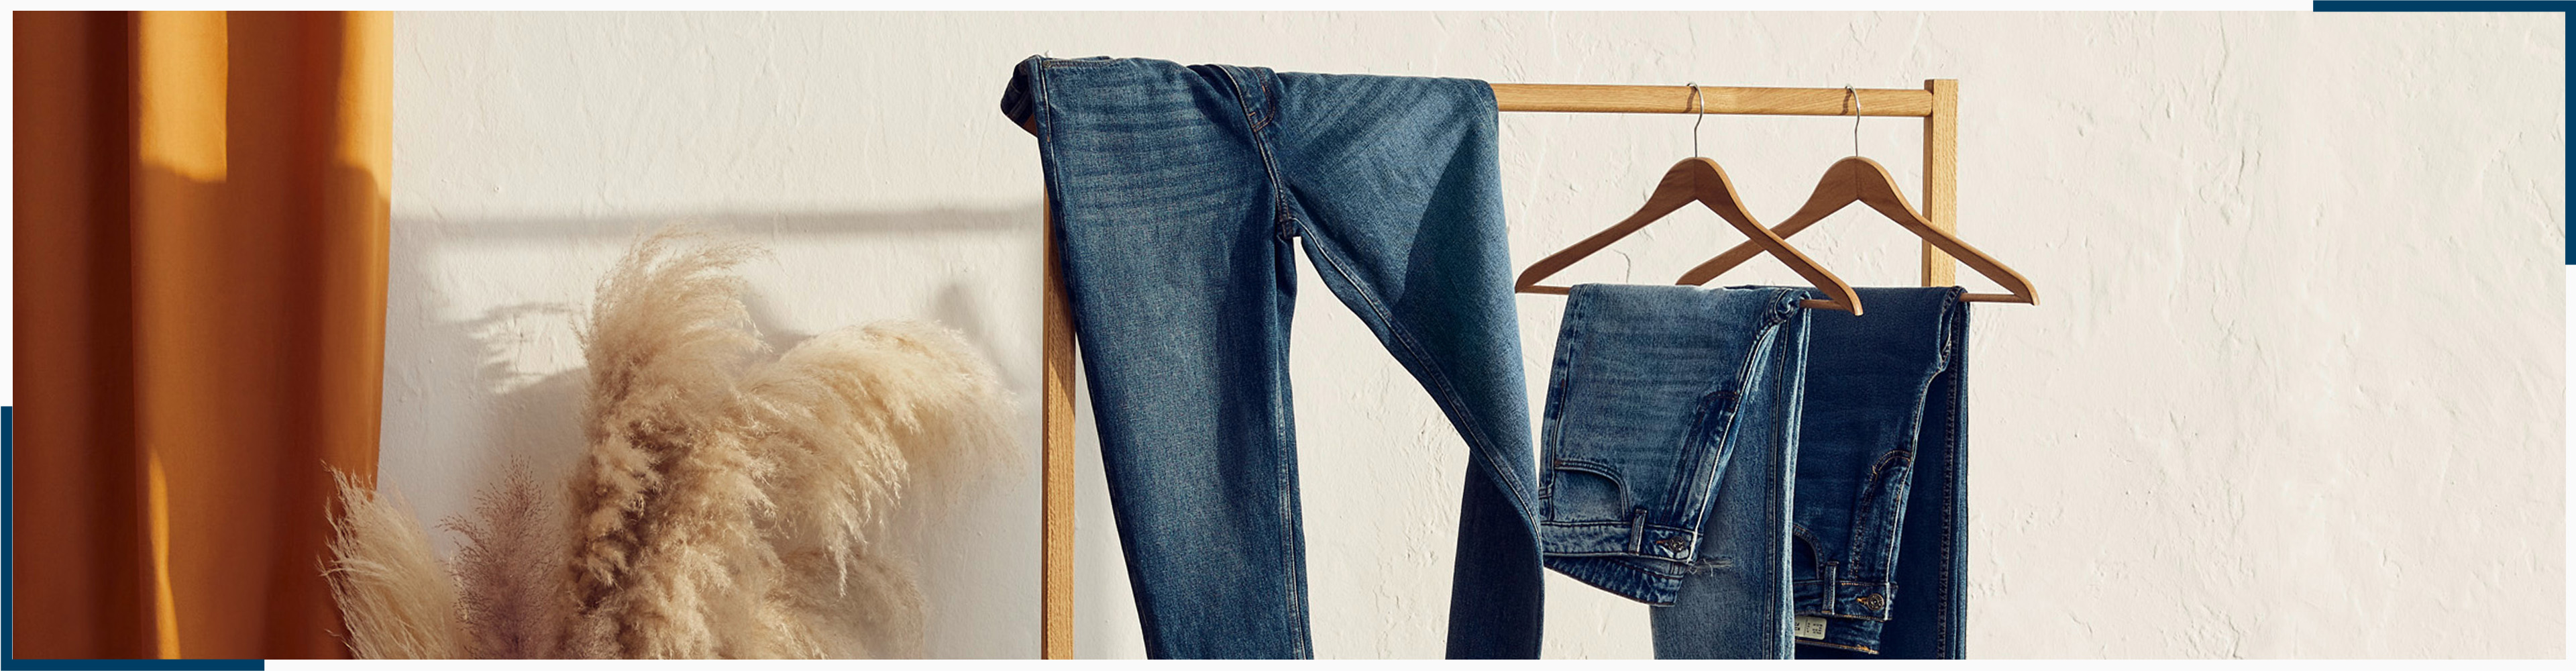 Jak prać jeansy? Wskazówki dotyczące pielęgnacji